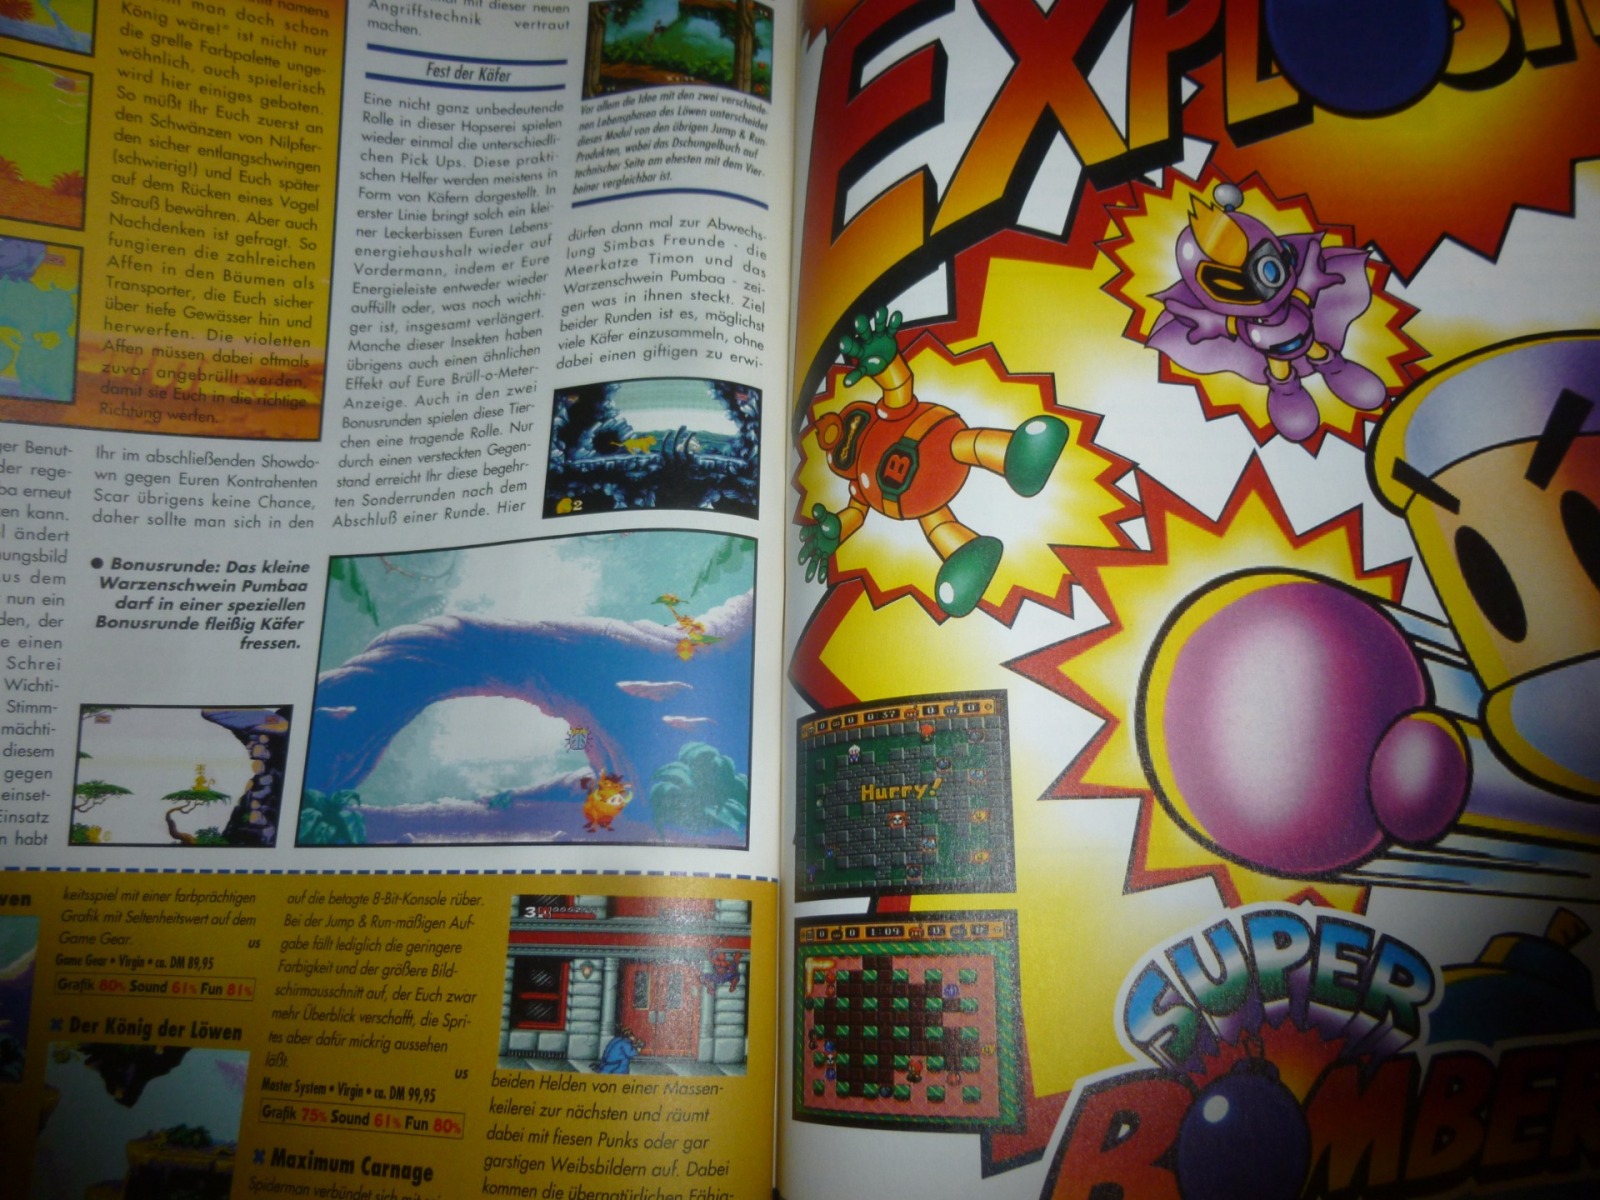 Play Time - Das Computer- und Videospiele-Magazin - Ausgabe 1/95 1995 22